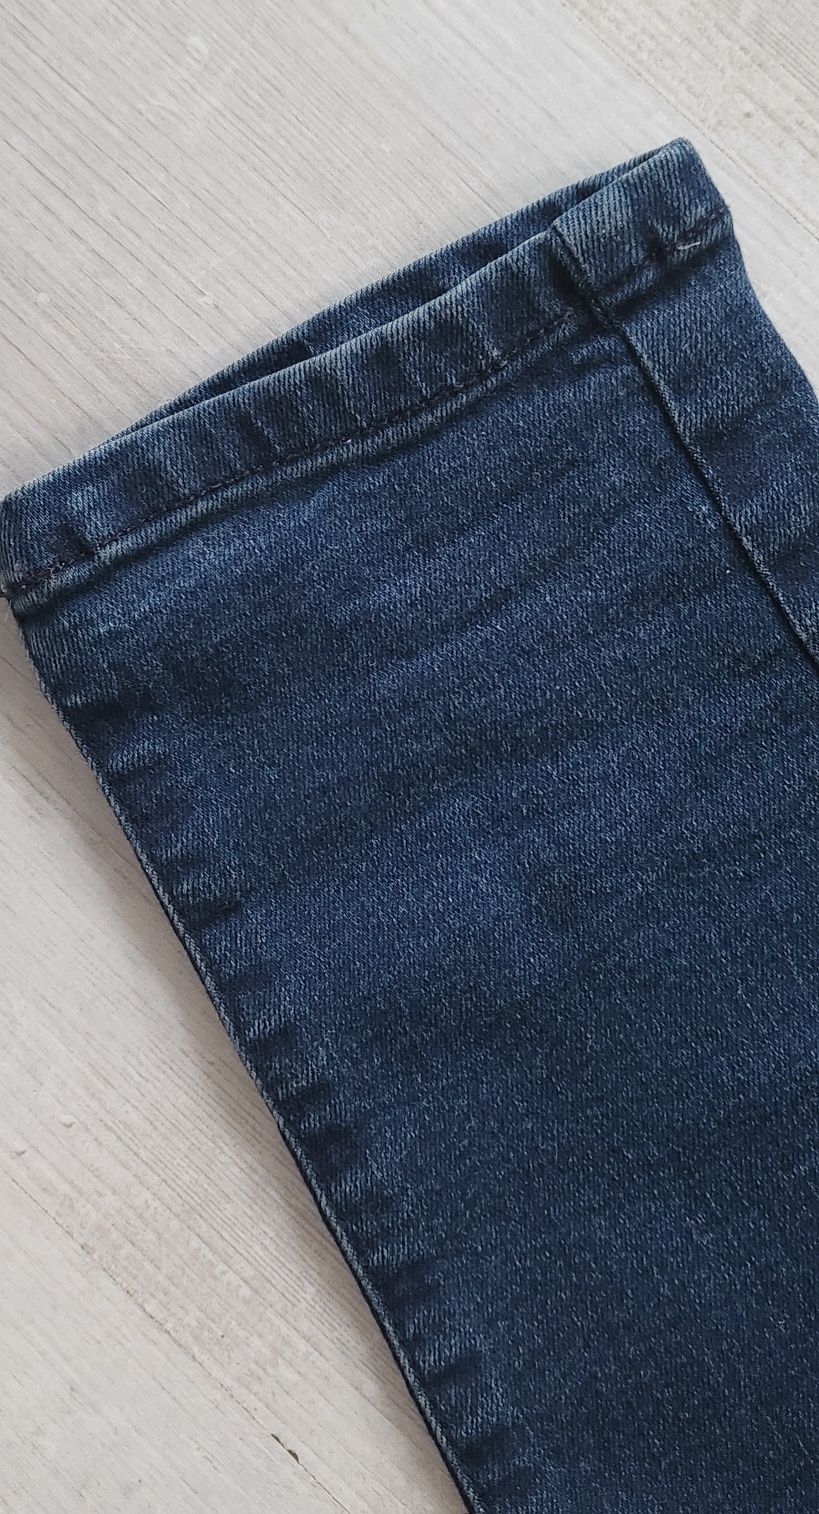 Spodnie ciążowe jeans r. 38 M